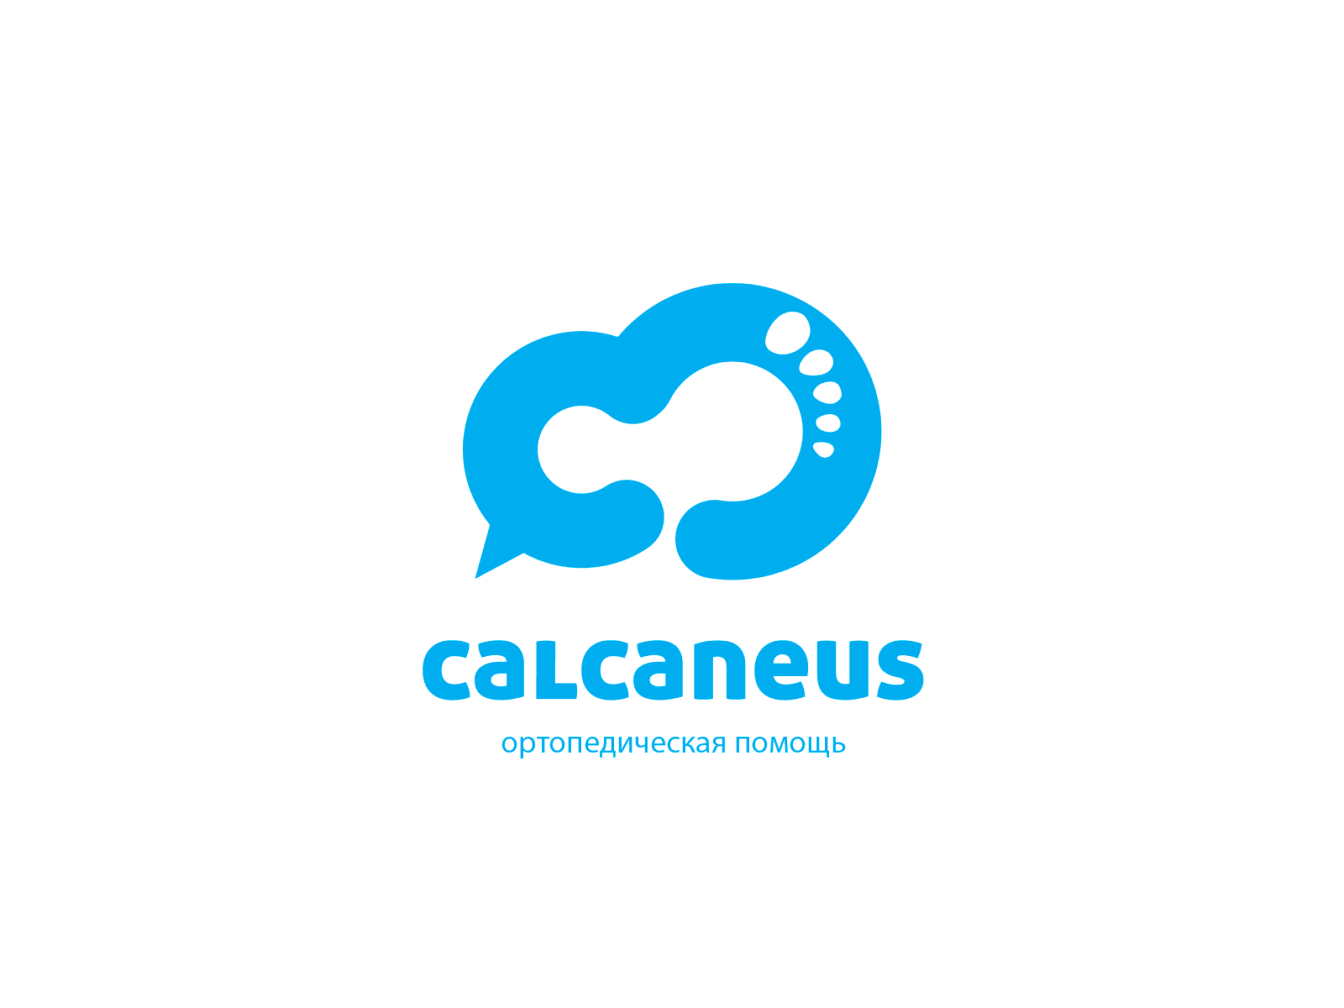 CALCANEUS - image 3